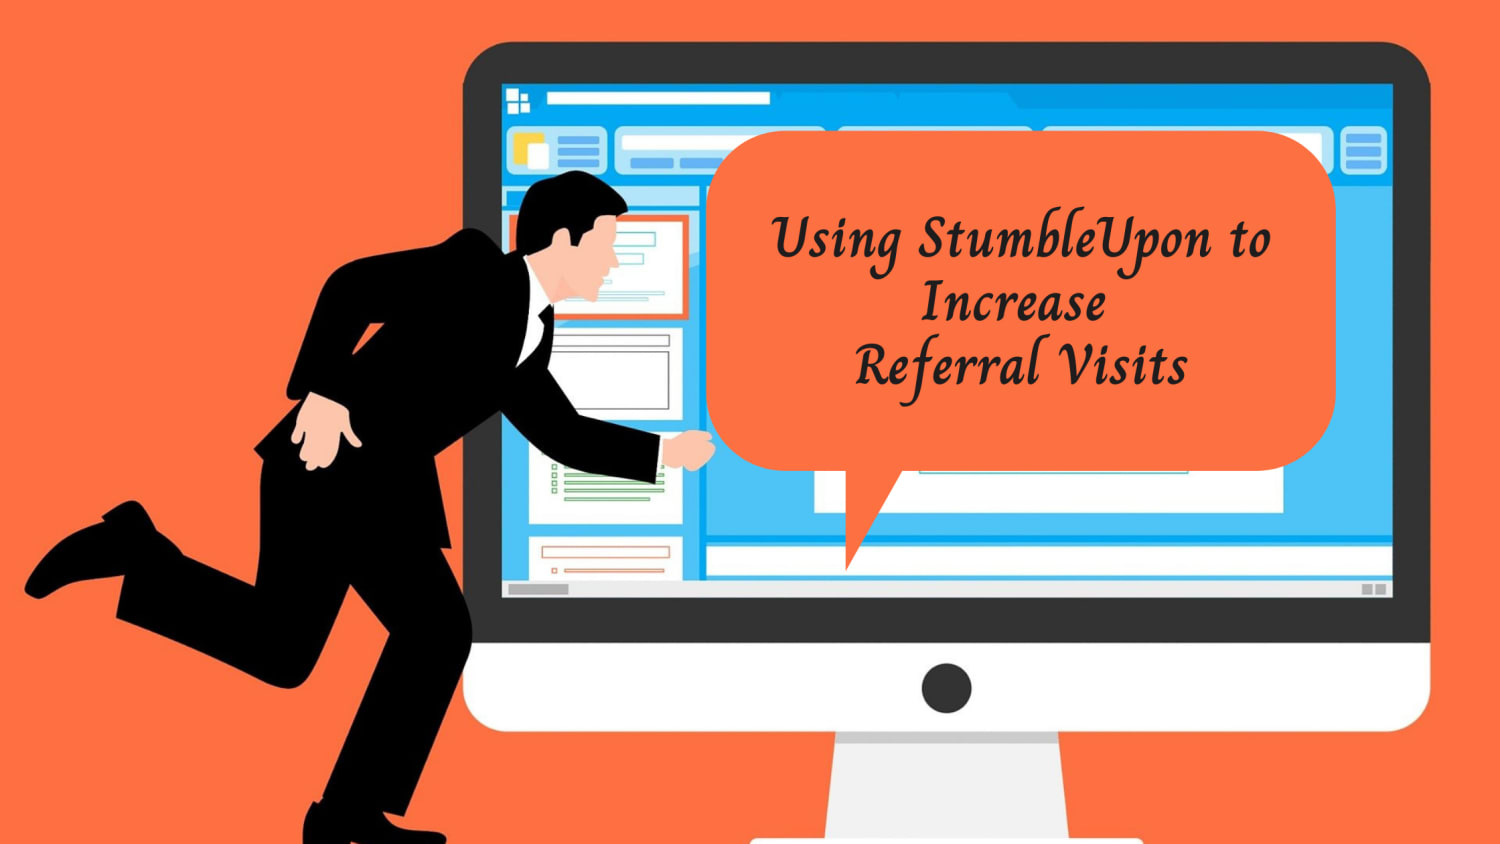 Using StumbleUpon to Increase Referral Visits